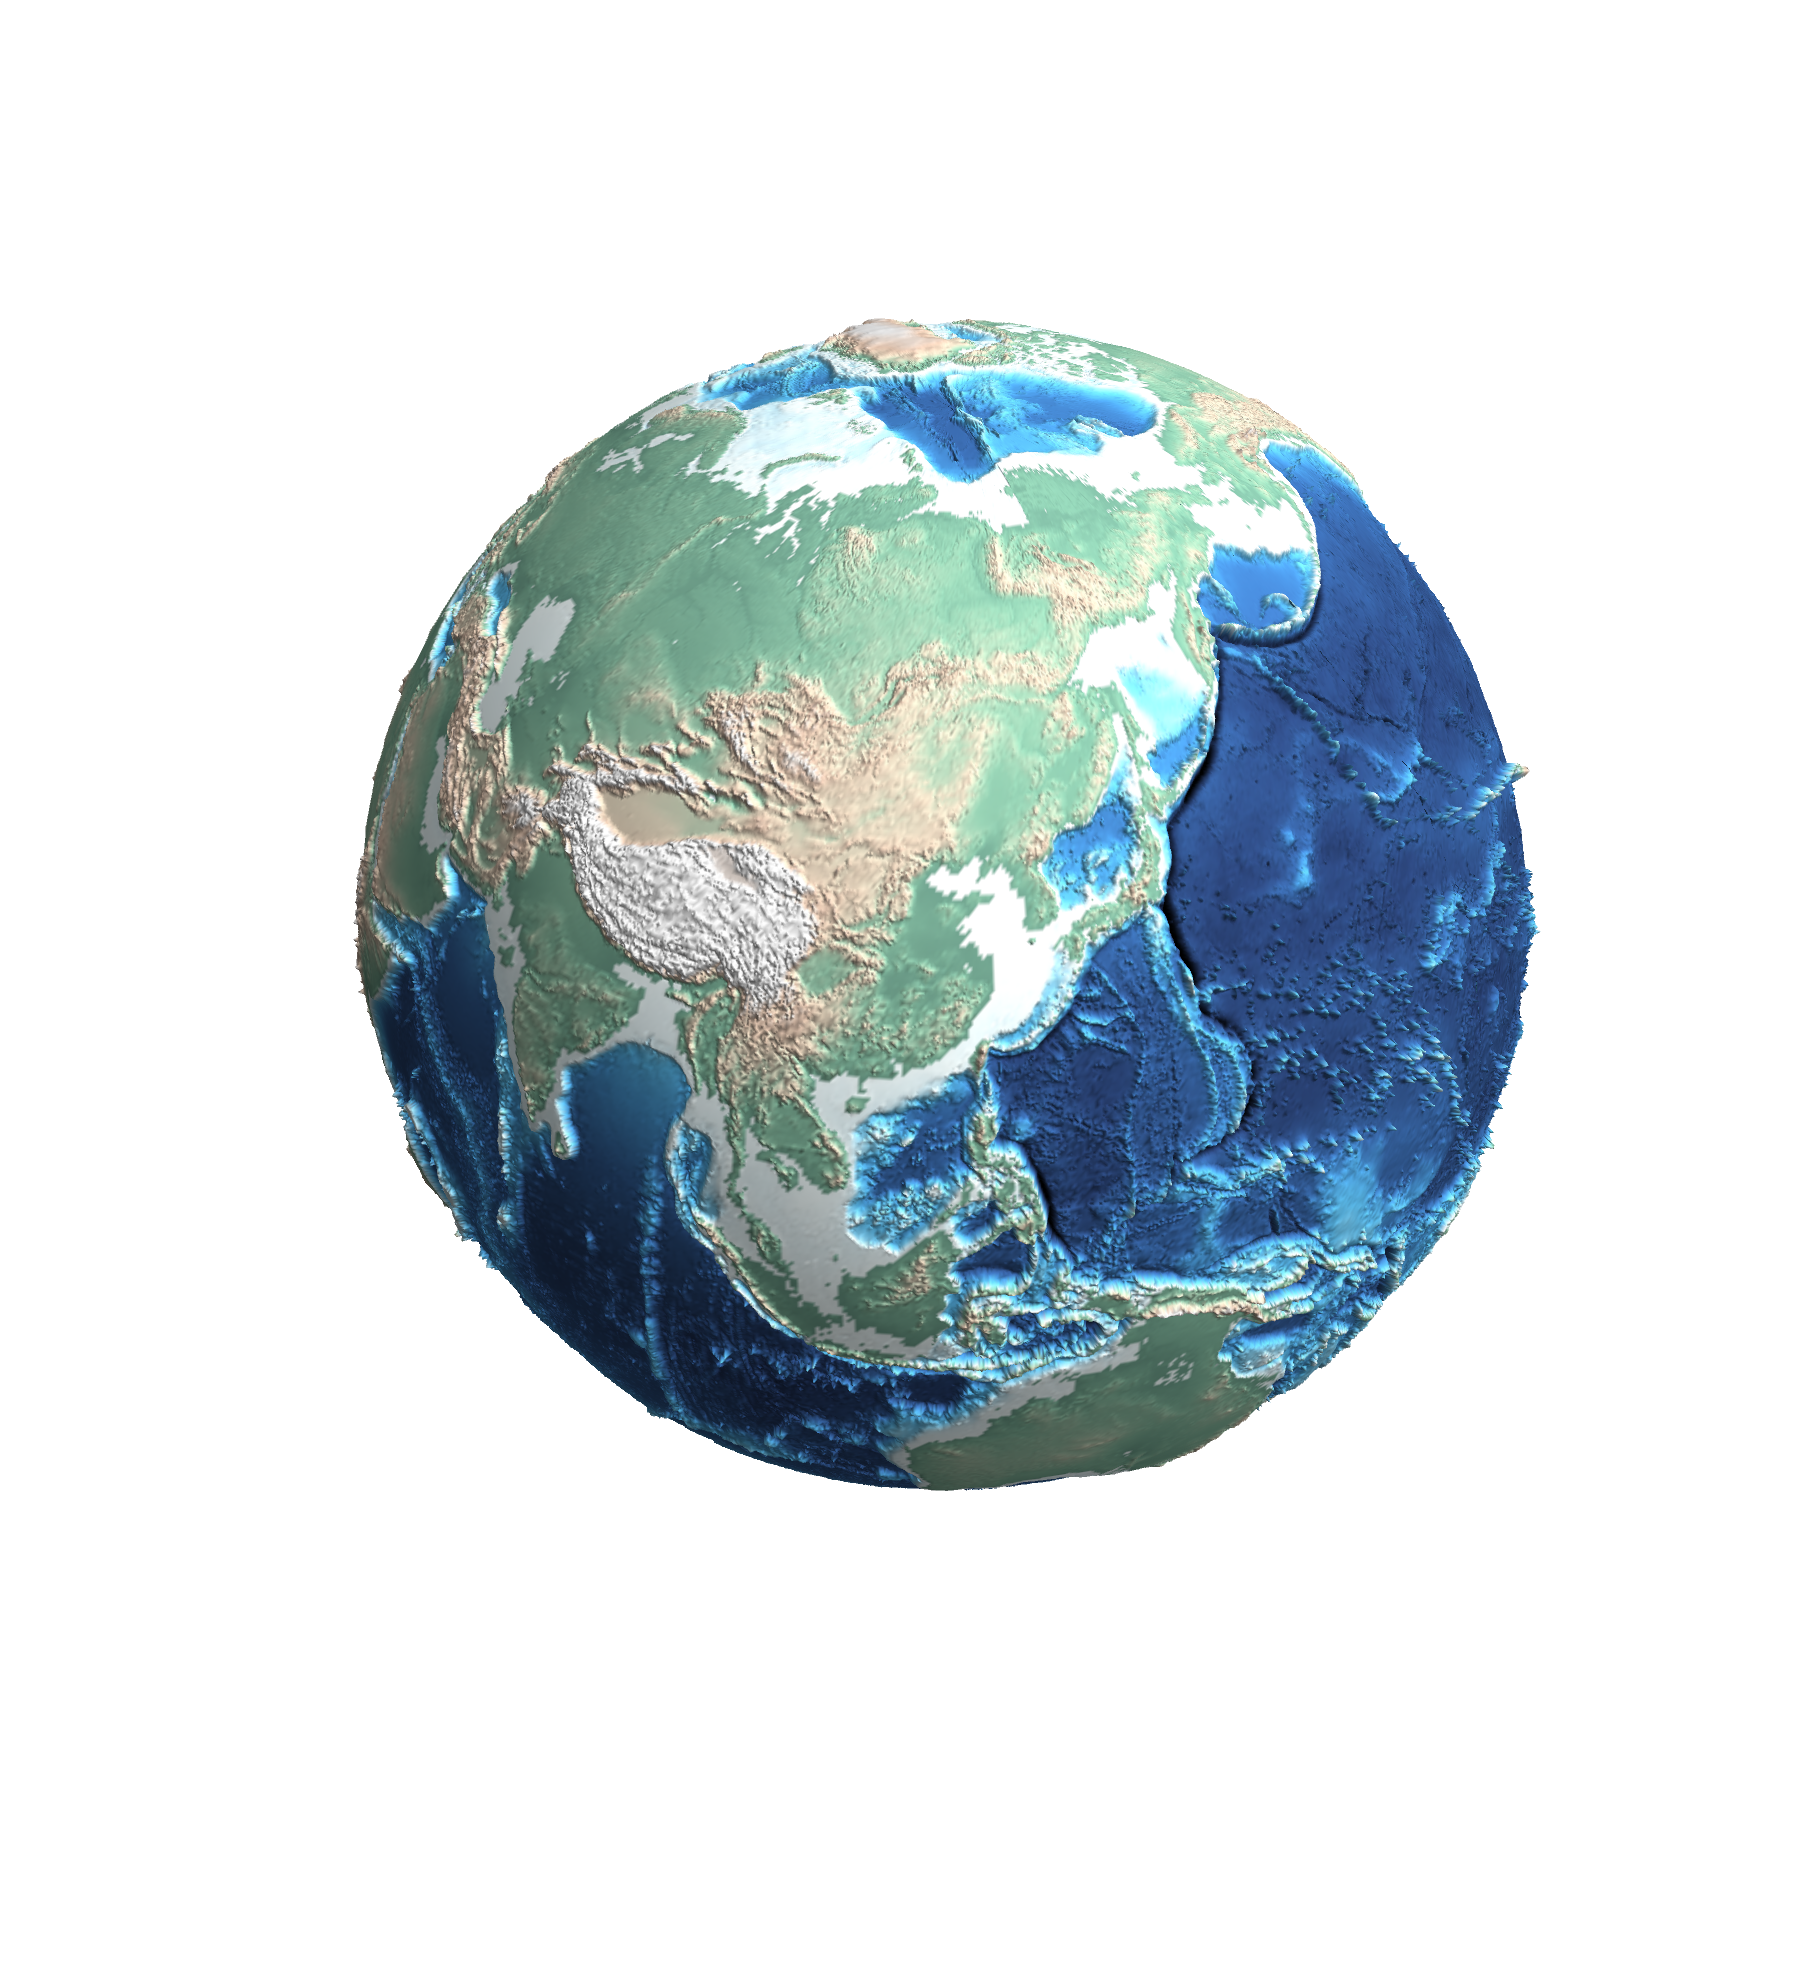 A 3D globe